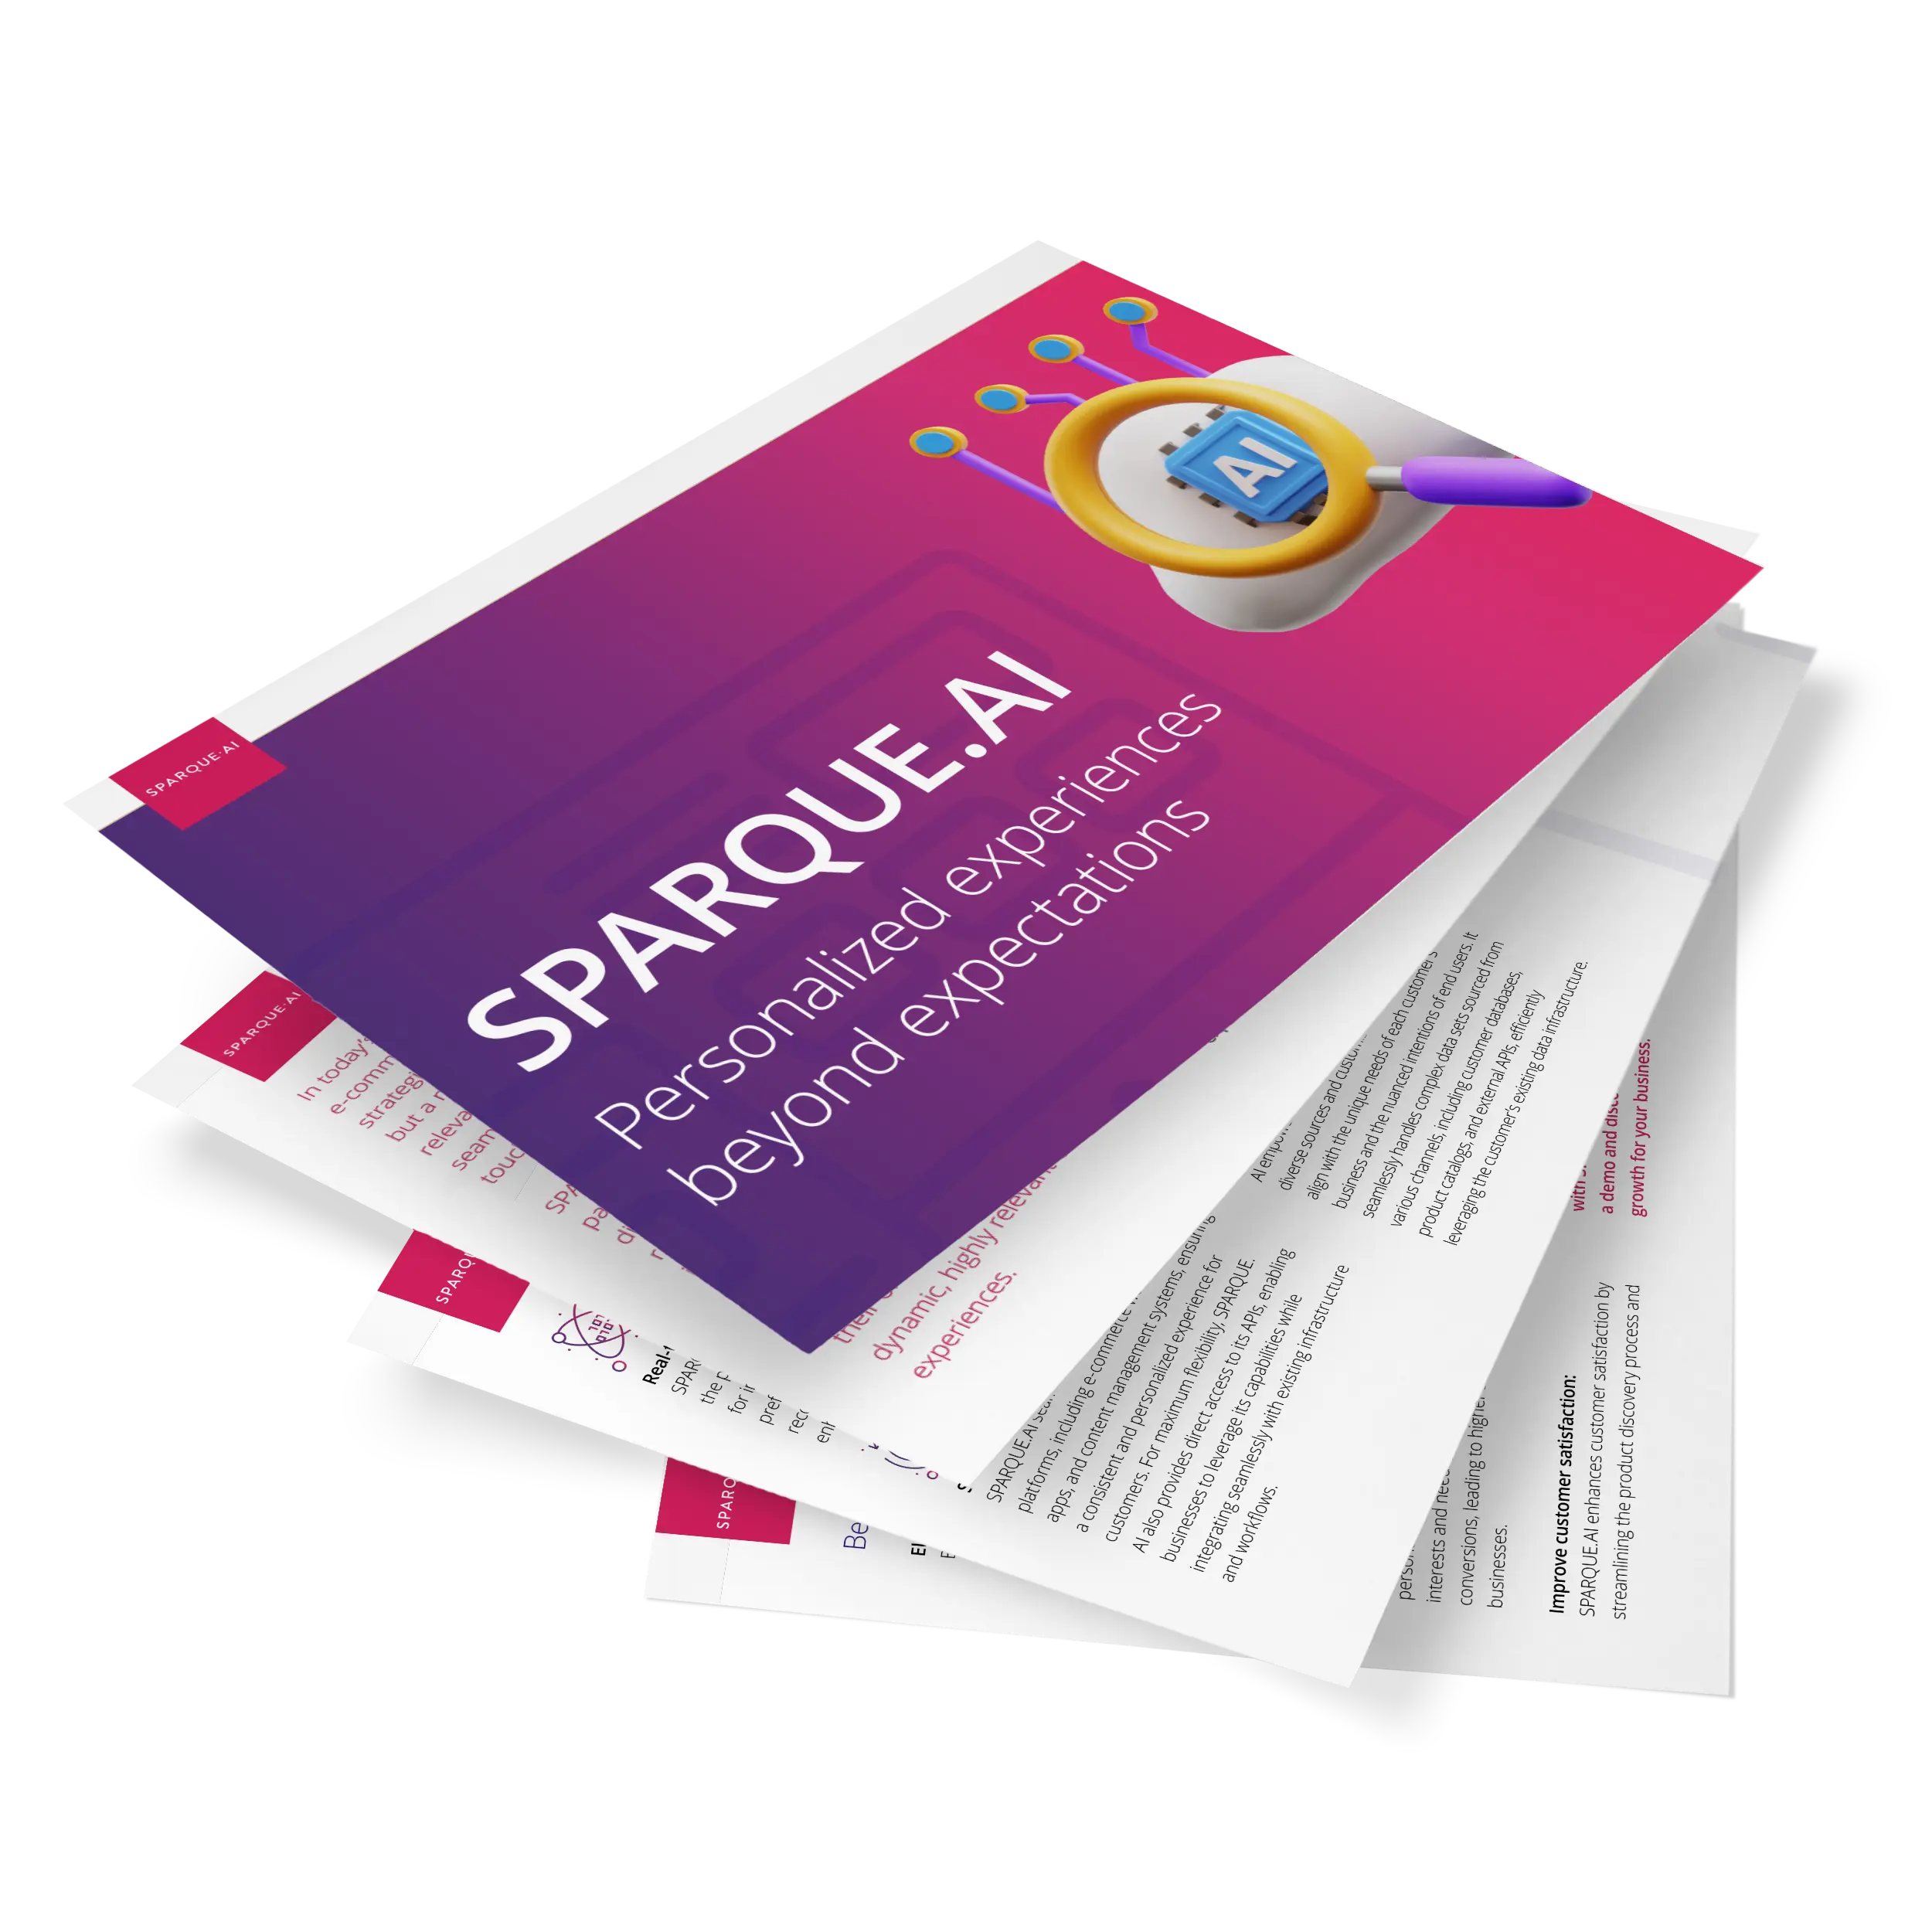 Suche und Empfehlungen powered by SPARQUE.AI - Produktinformationsbroschüre  